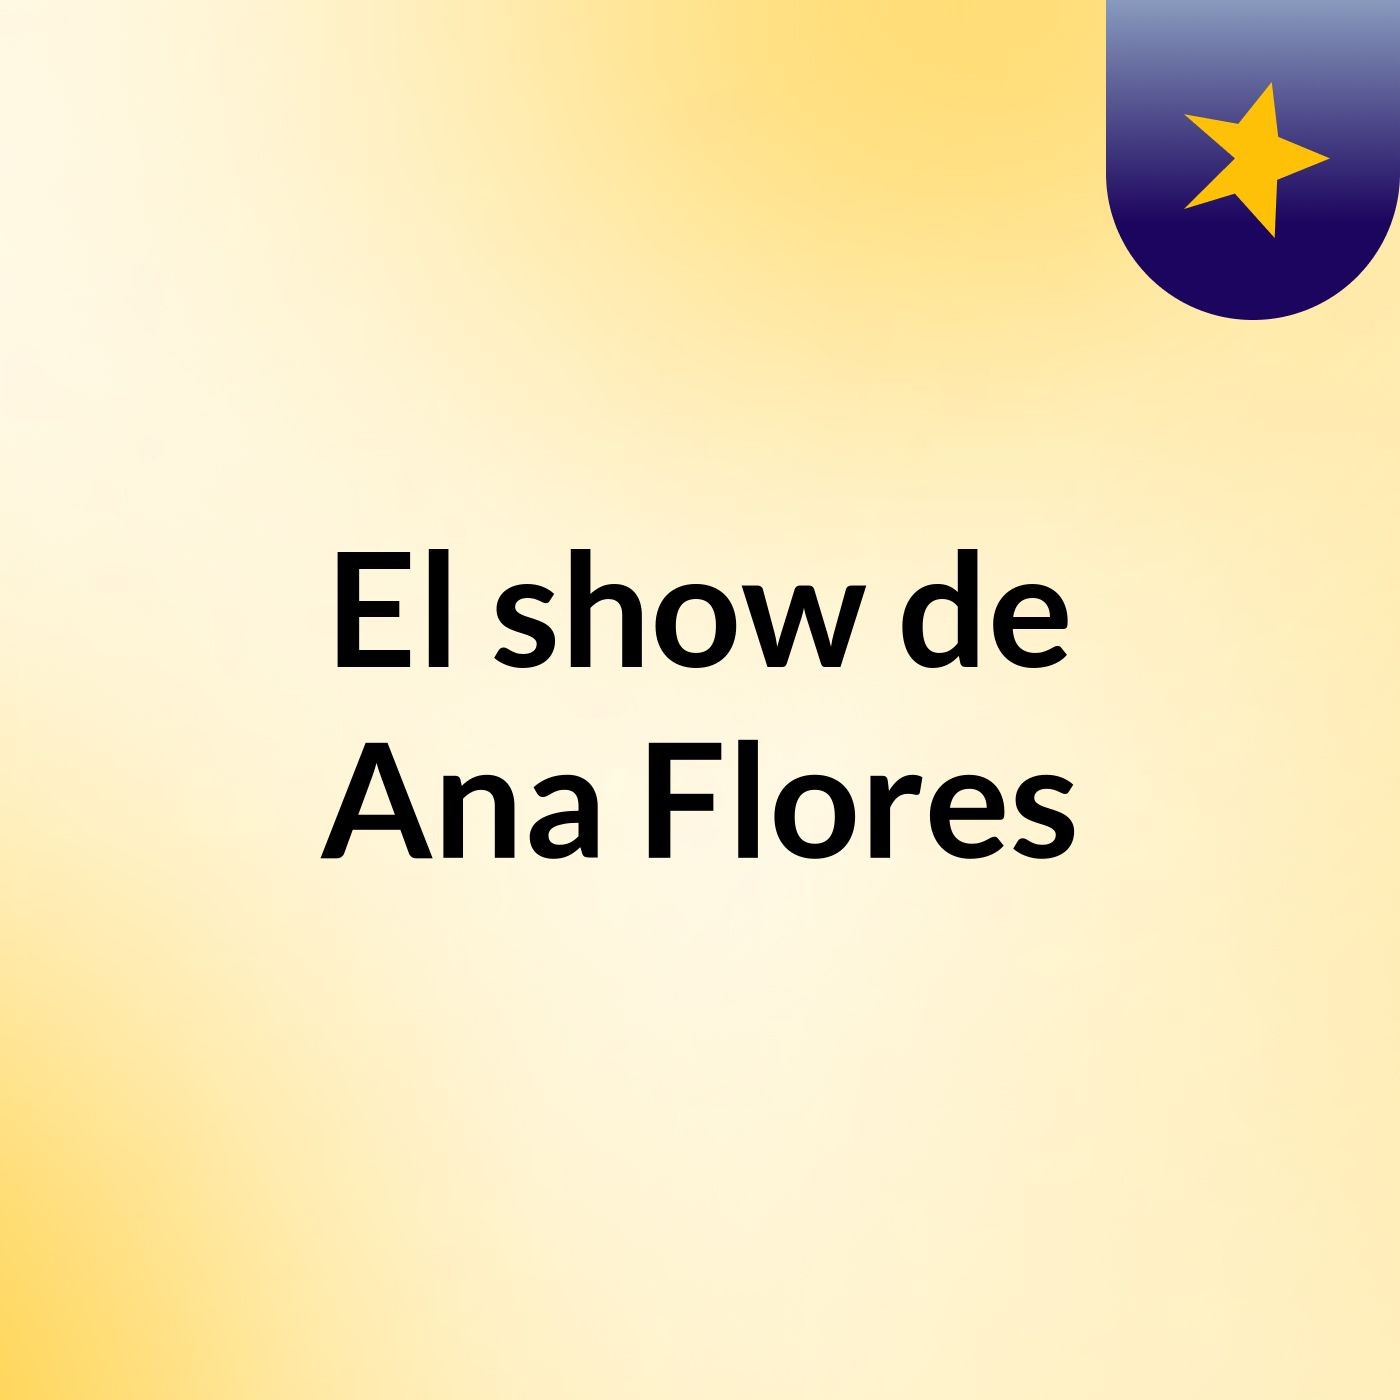 El show de Ana Flores